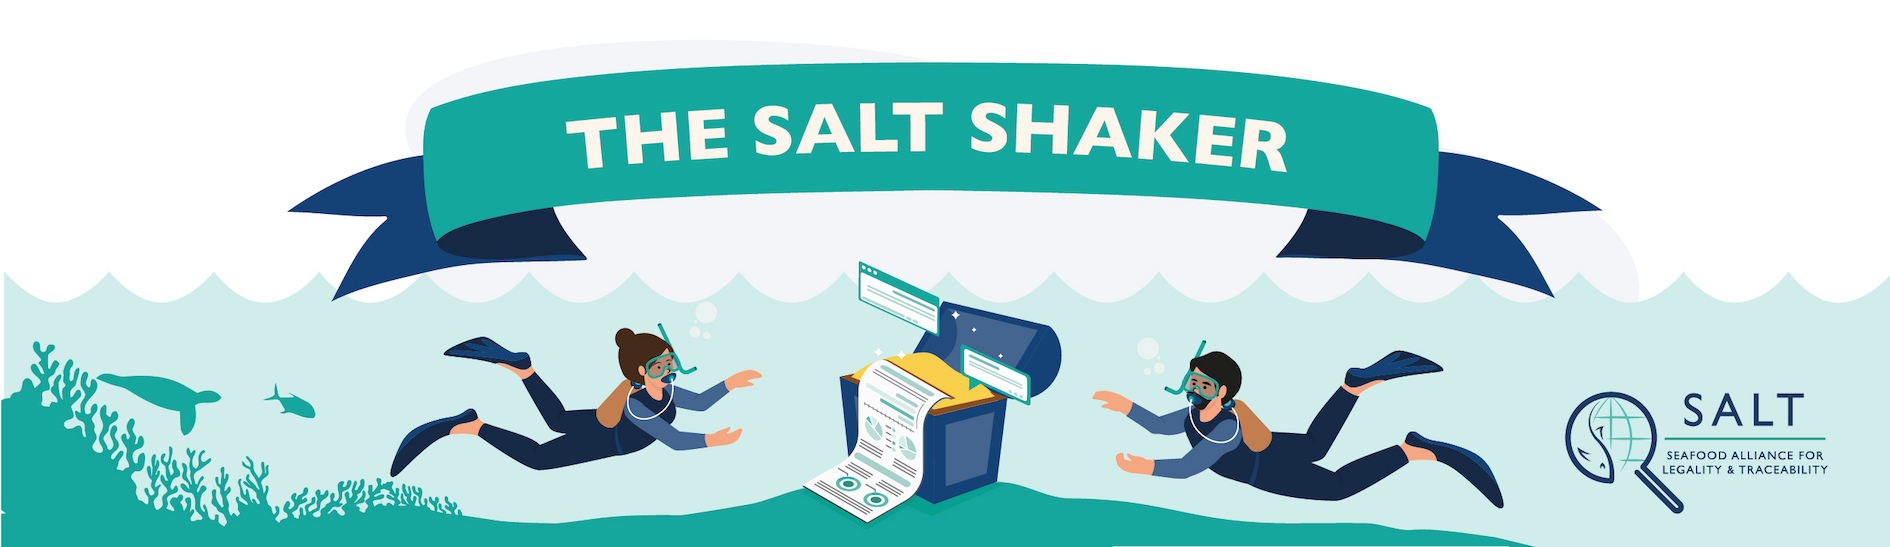 SALT SHAKER header